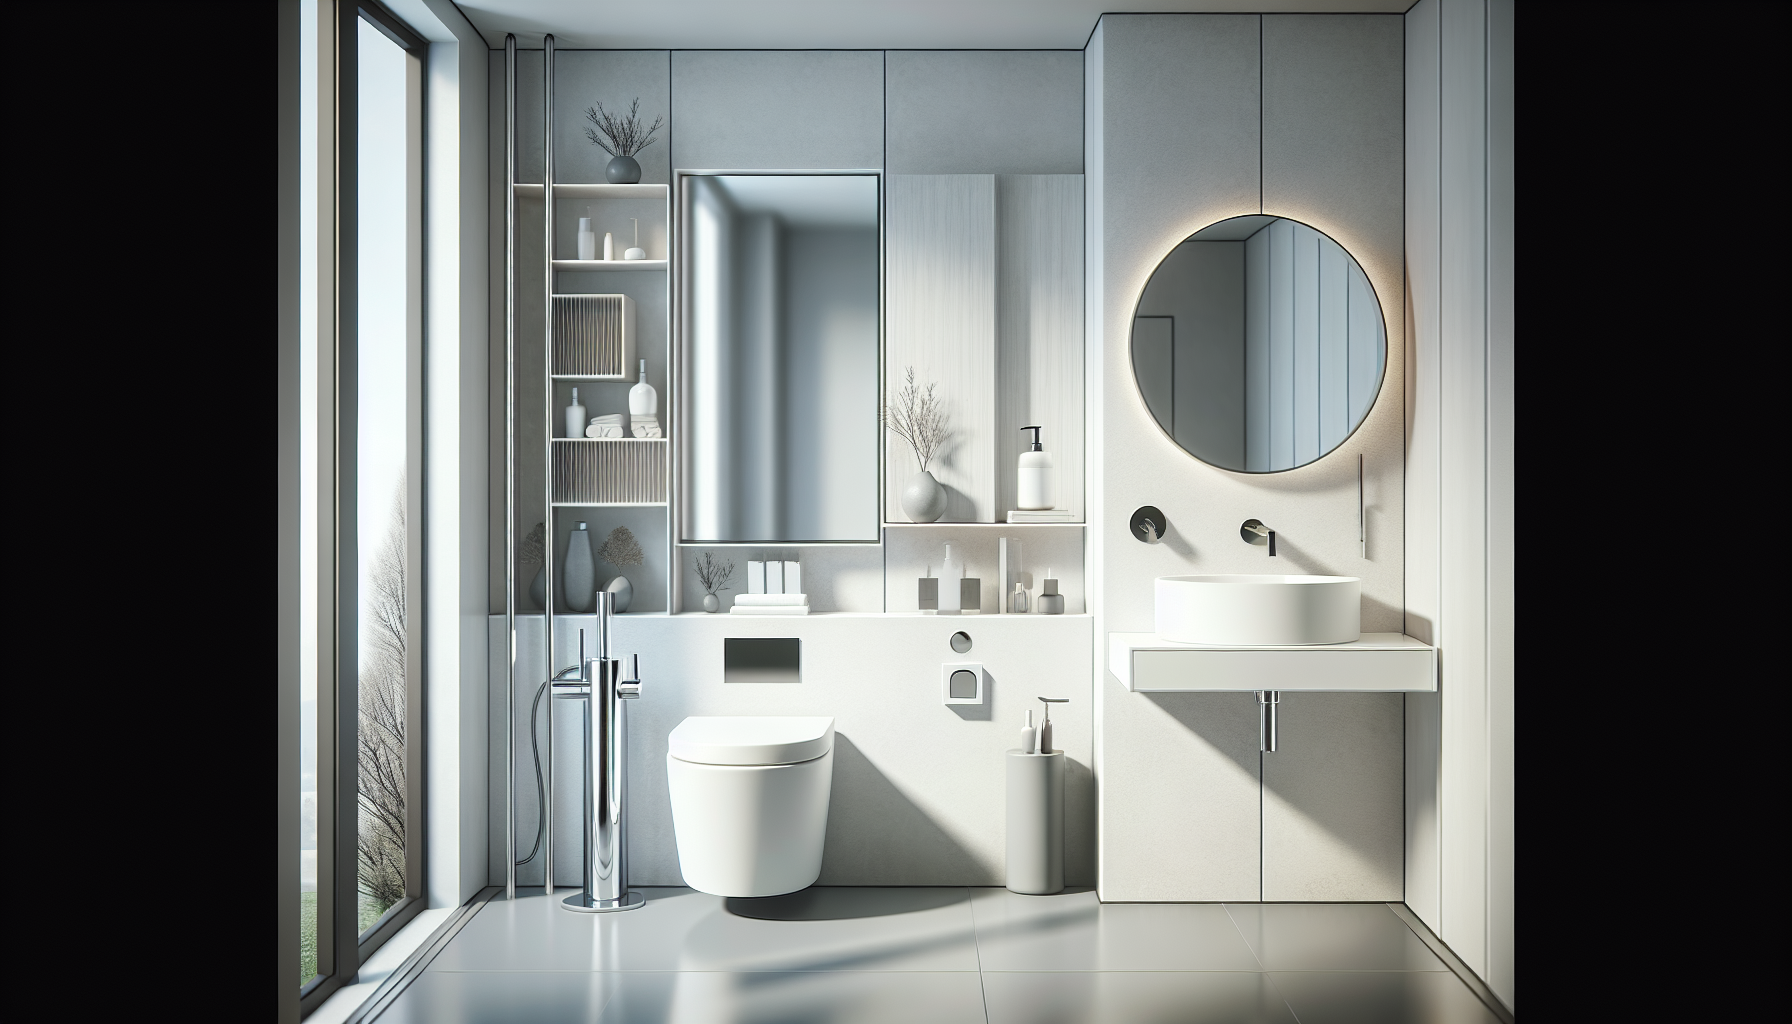 Sanitärinstallationen und Ausstattung. Ein stilvolles und platzsparendes Gäste-WC-Design mit modernen Sanitärmöbeln und Waschbecken.